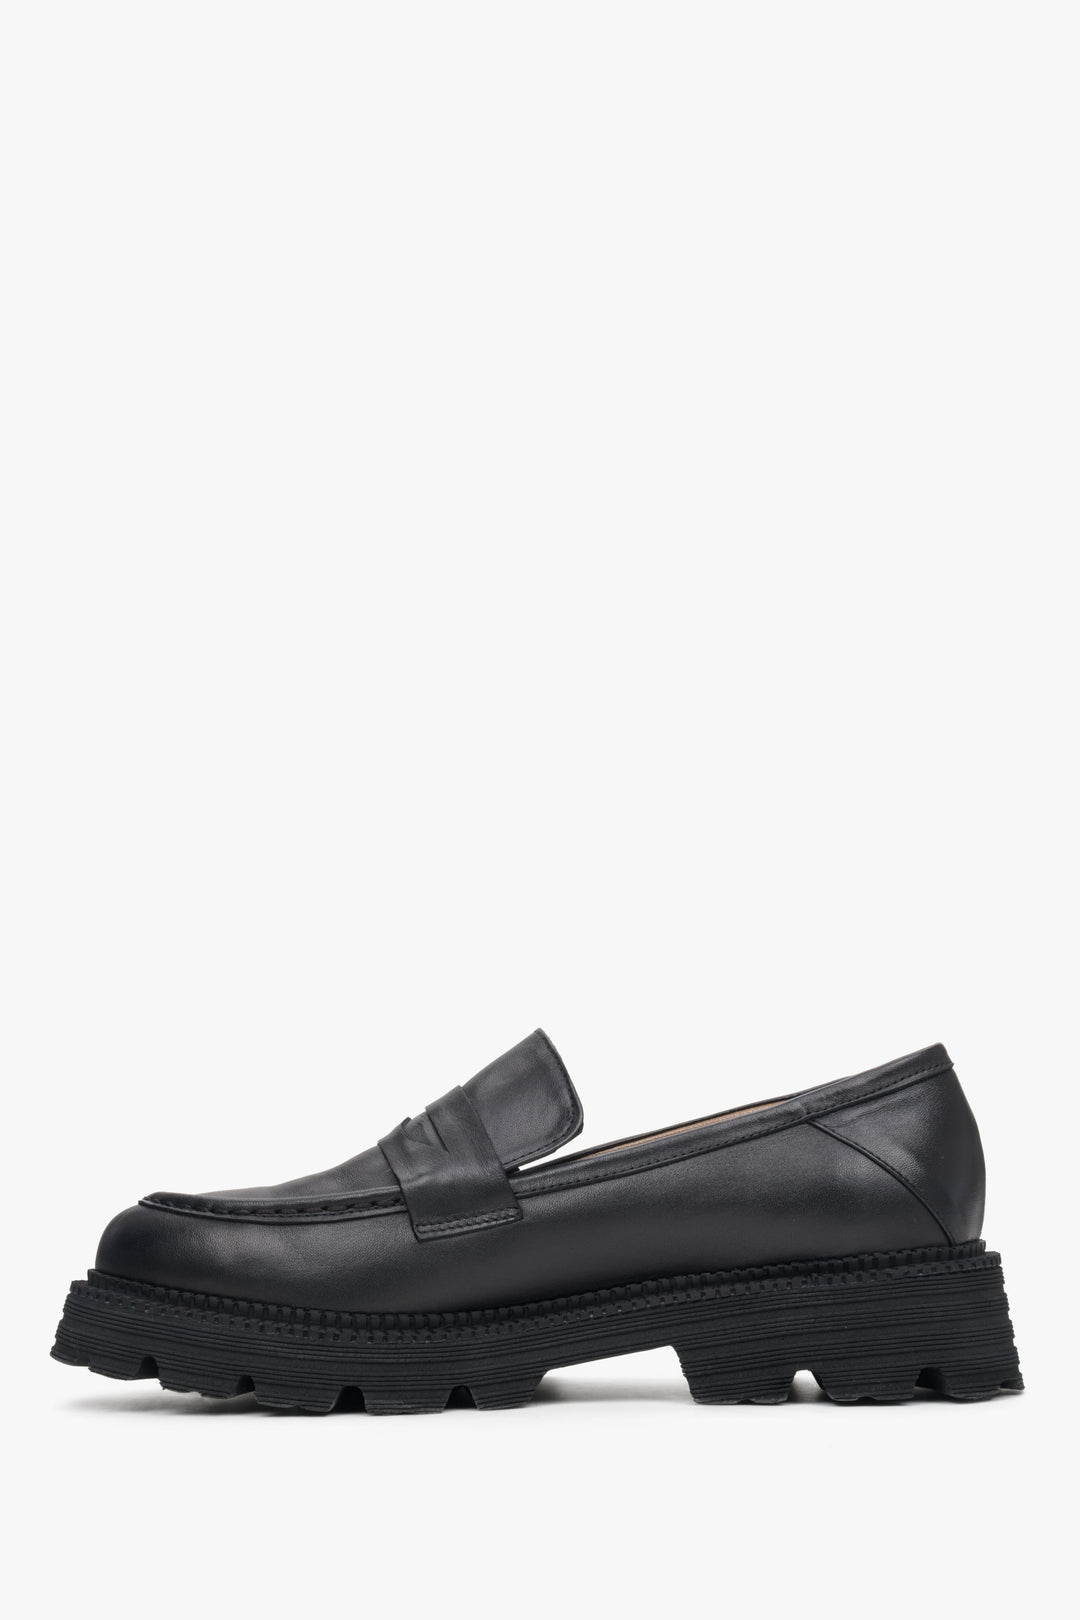 Women's black moccasins by Estro - shoe profile.